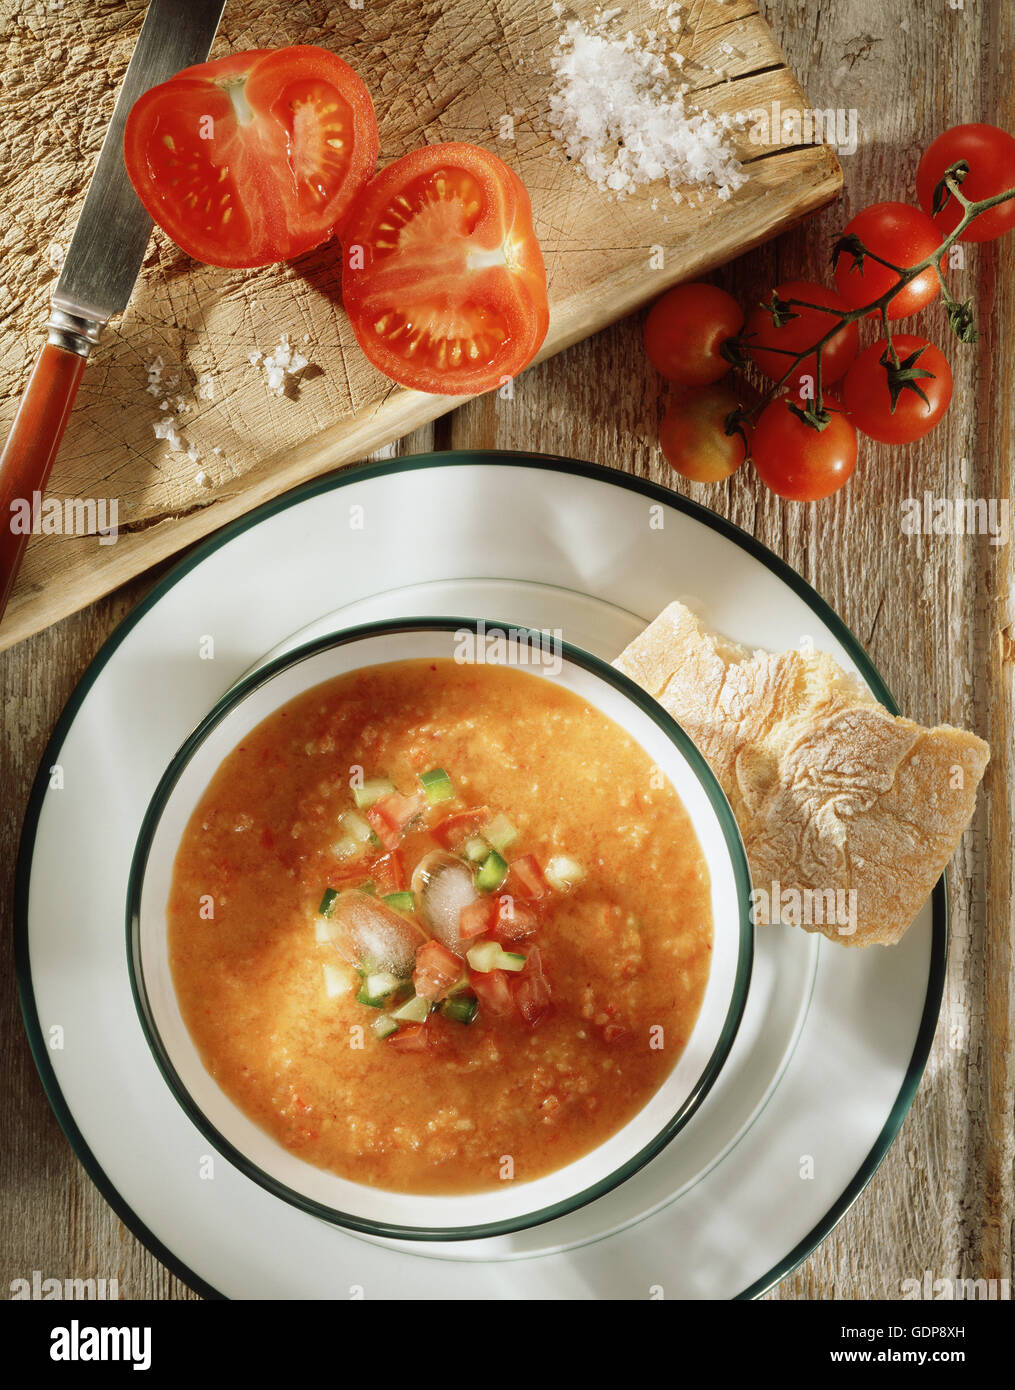 Gazpacho Suppe knuspriges Ciabatta Brot schneiden frisch Tomaten Rebe Meer Salz rustikale Holz hacken Board Draufsicht Stockfoto